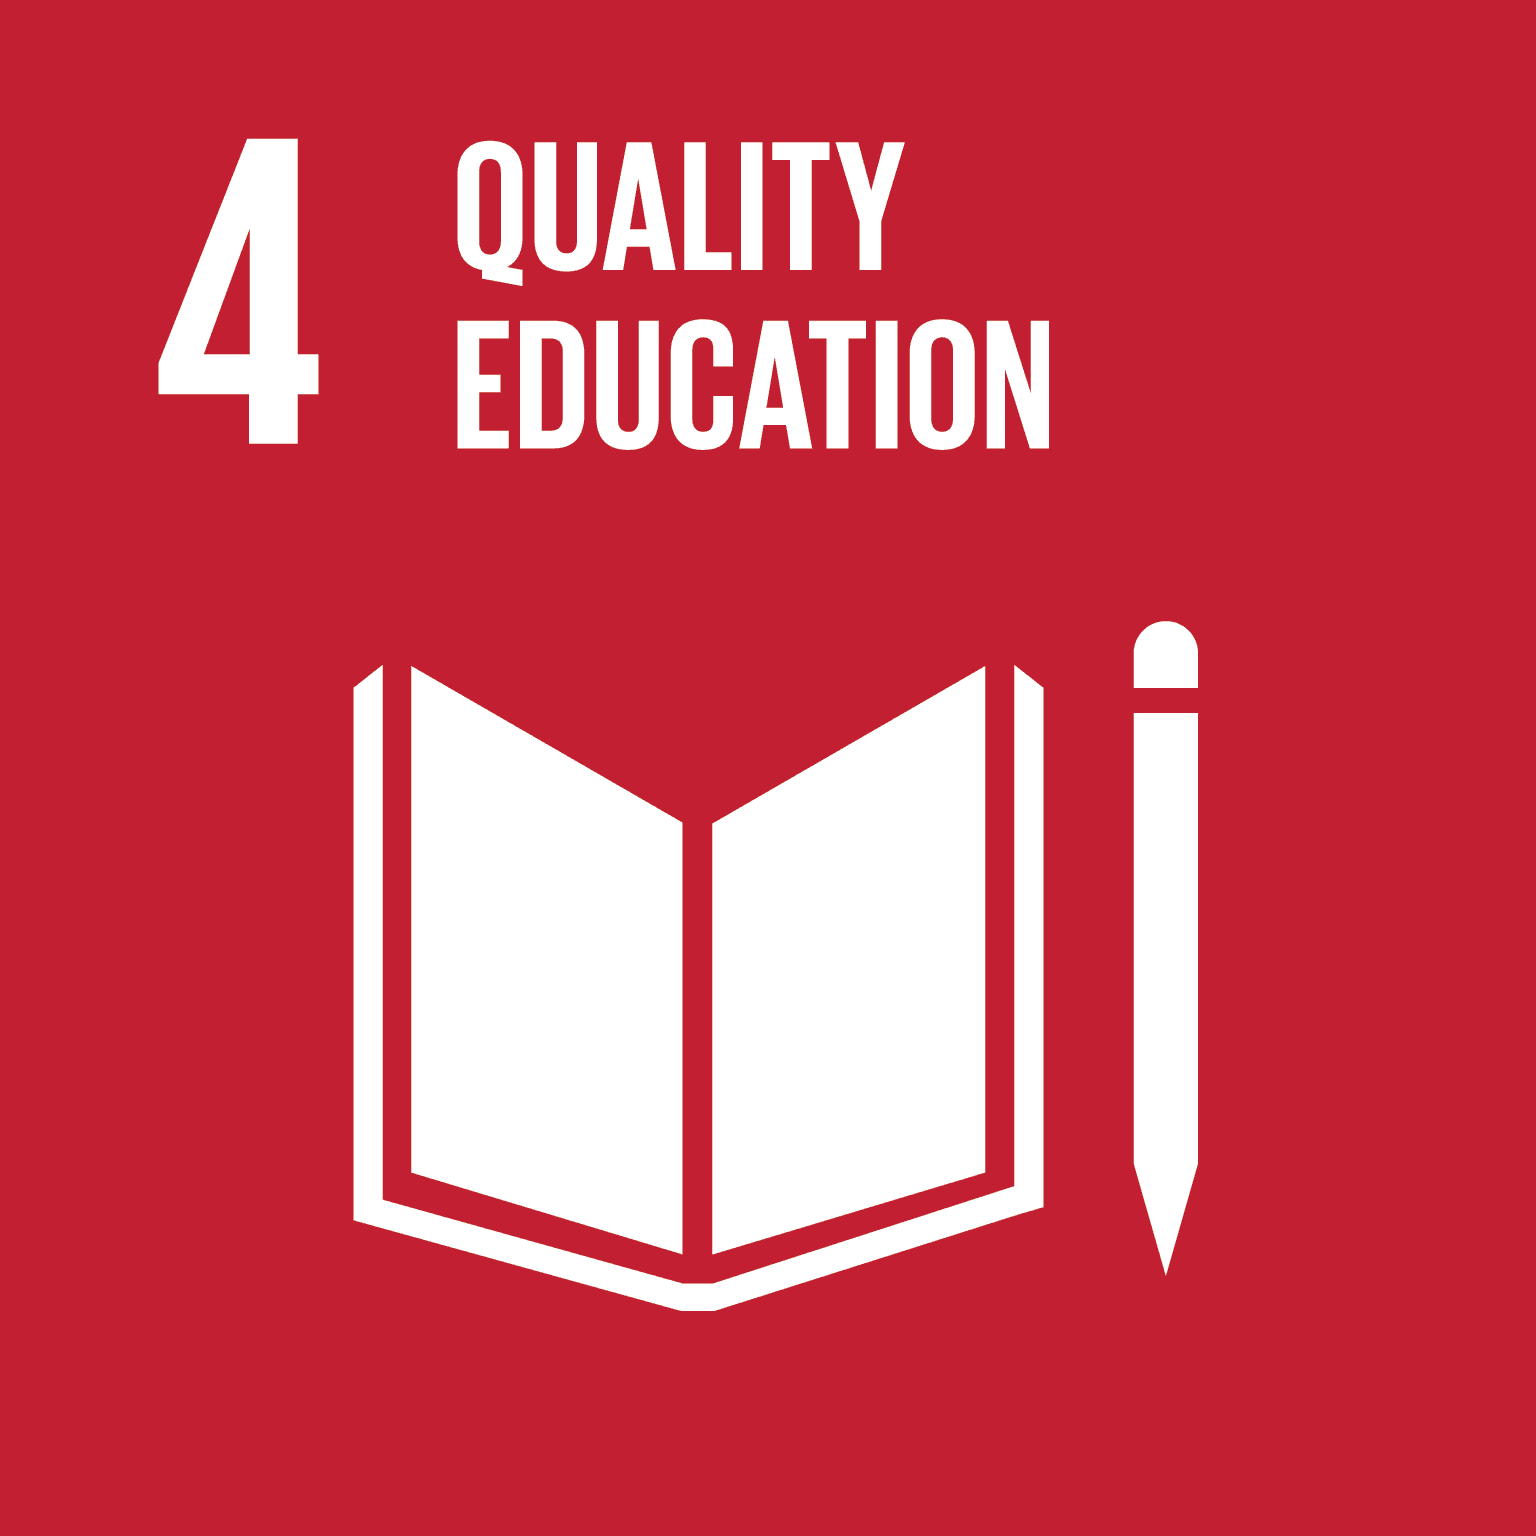 UN SDG 4: Quality Education logo